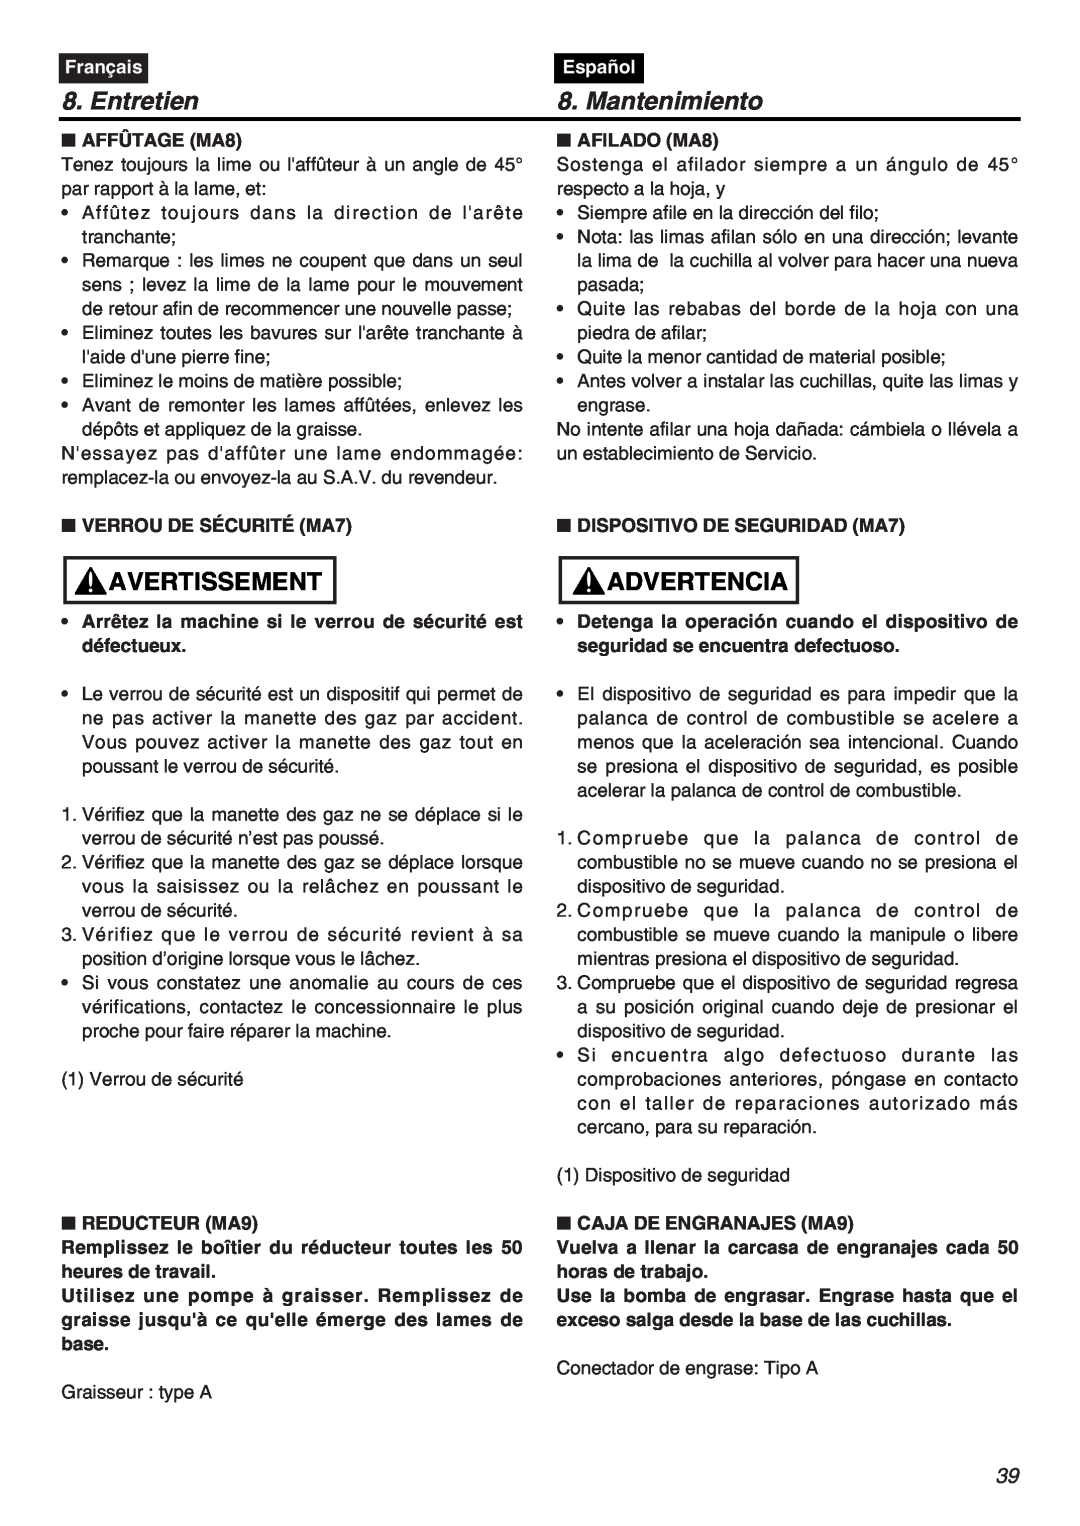 RedMax CHTZ2401L-CA, CHTZ2401-CA manual Entretien, Mantenimiento, Avertissement, Advertencia, Français, Español 